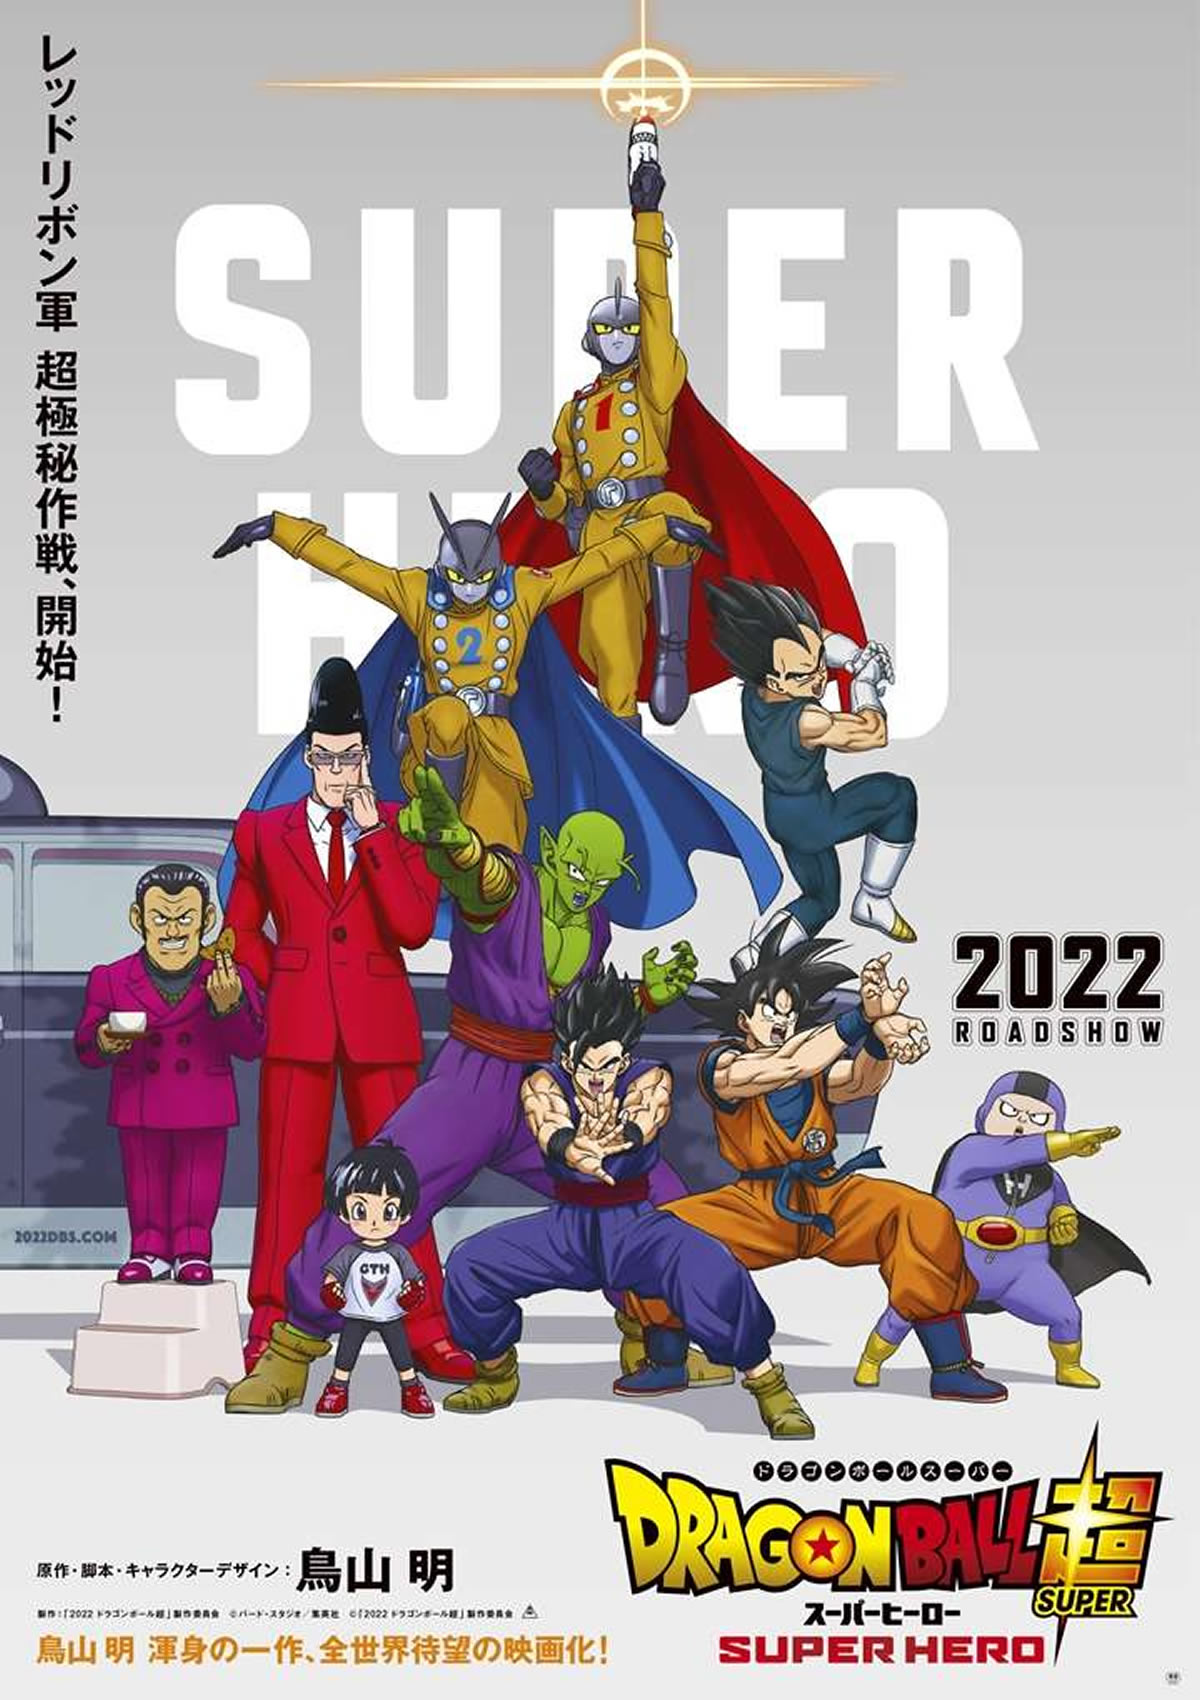 映画「ドラゴンボール超 スーパーヒーロー」がタイの劇場で2022年9月29日公開